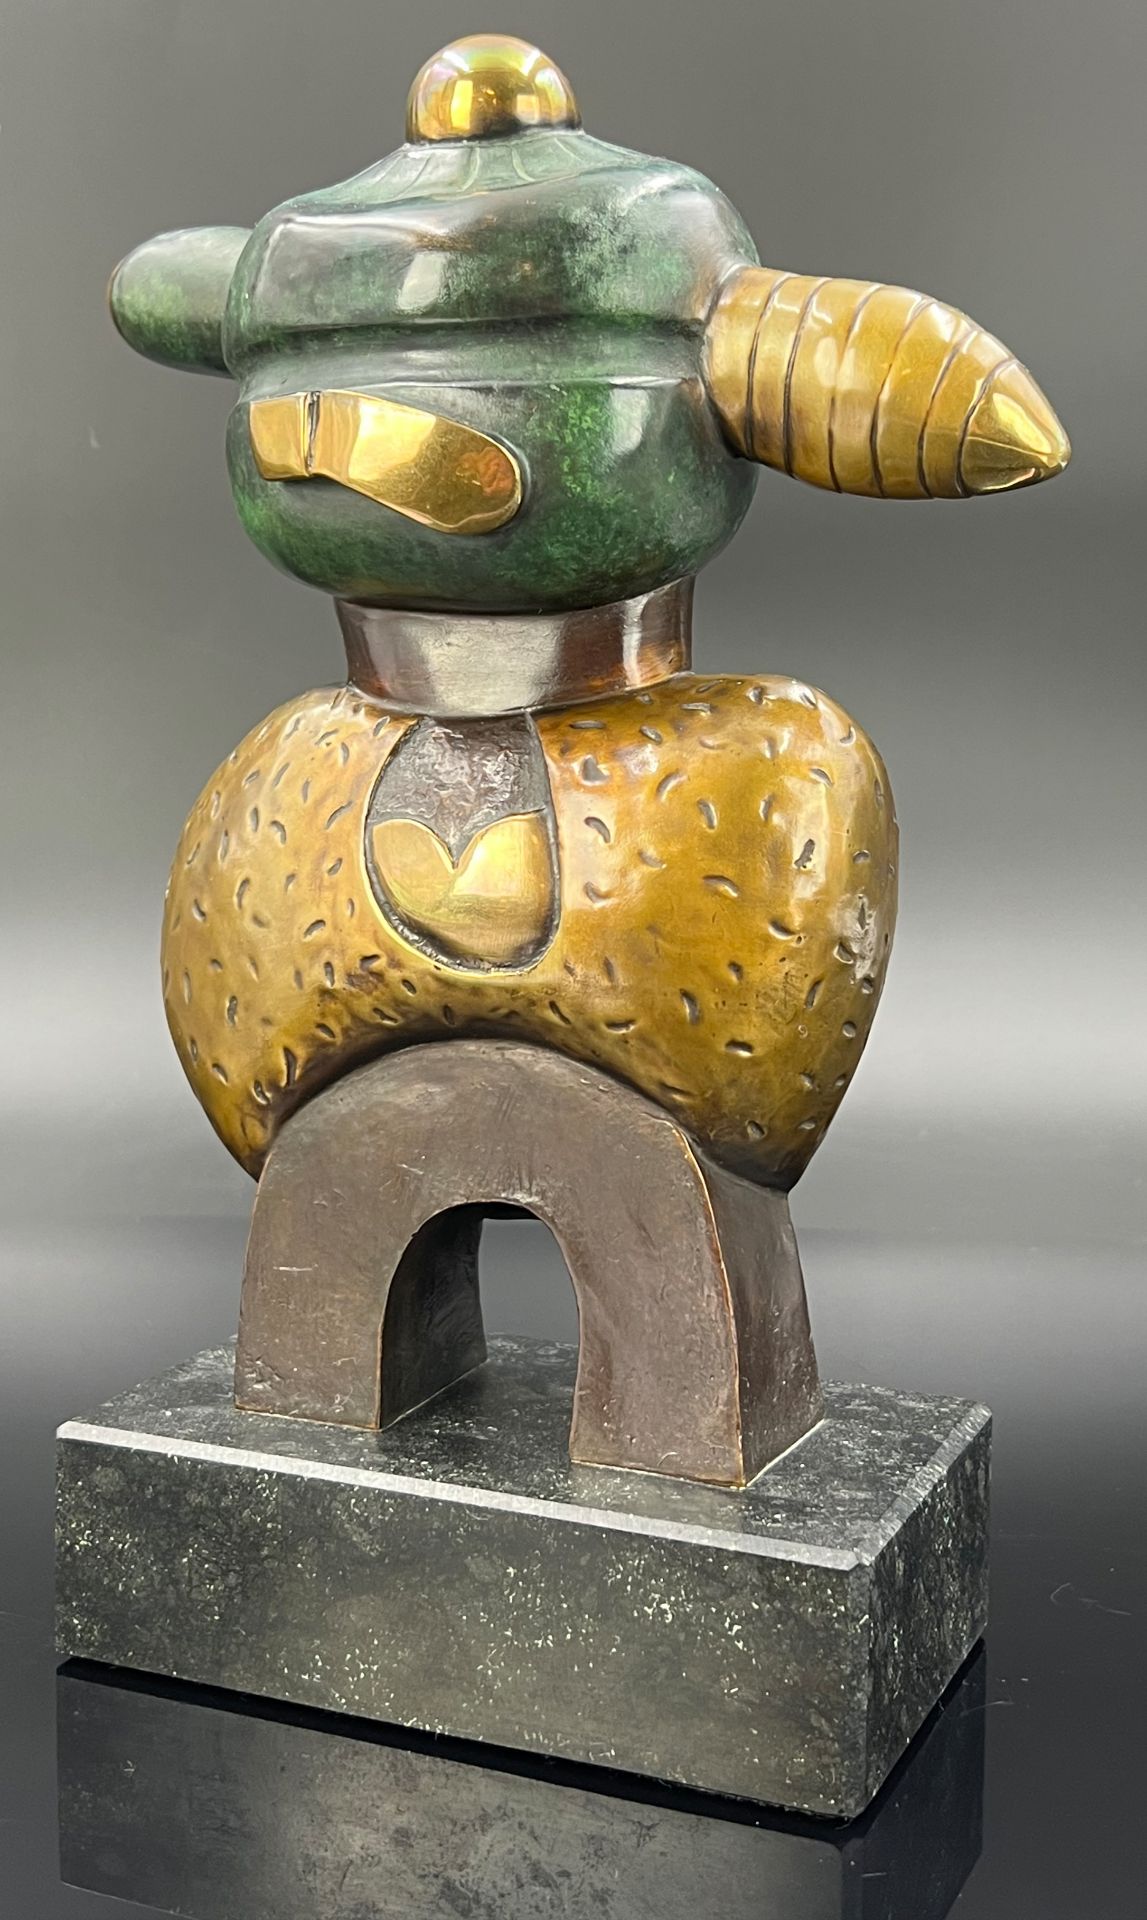 Otmar ALT (1940). Bronze. "King of the bees". 2005.